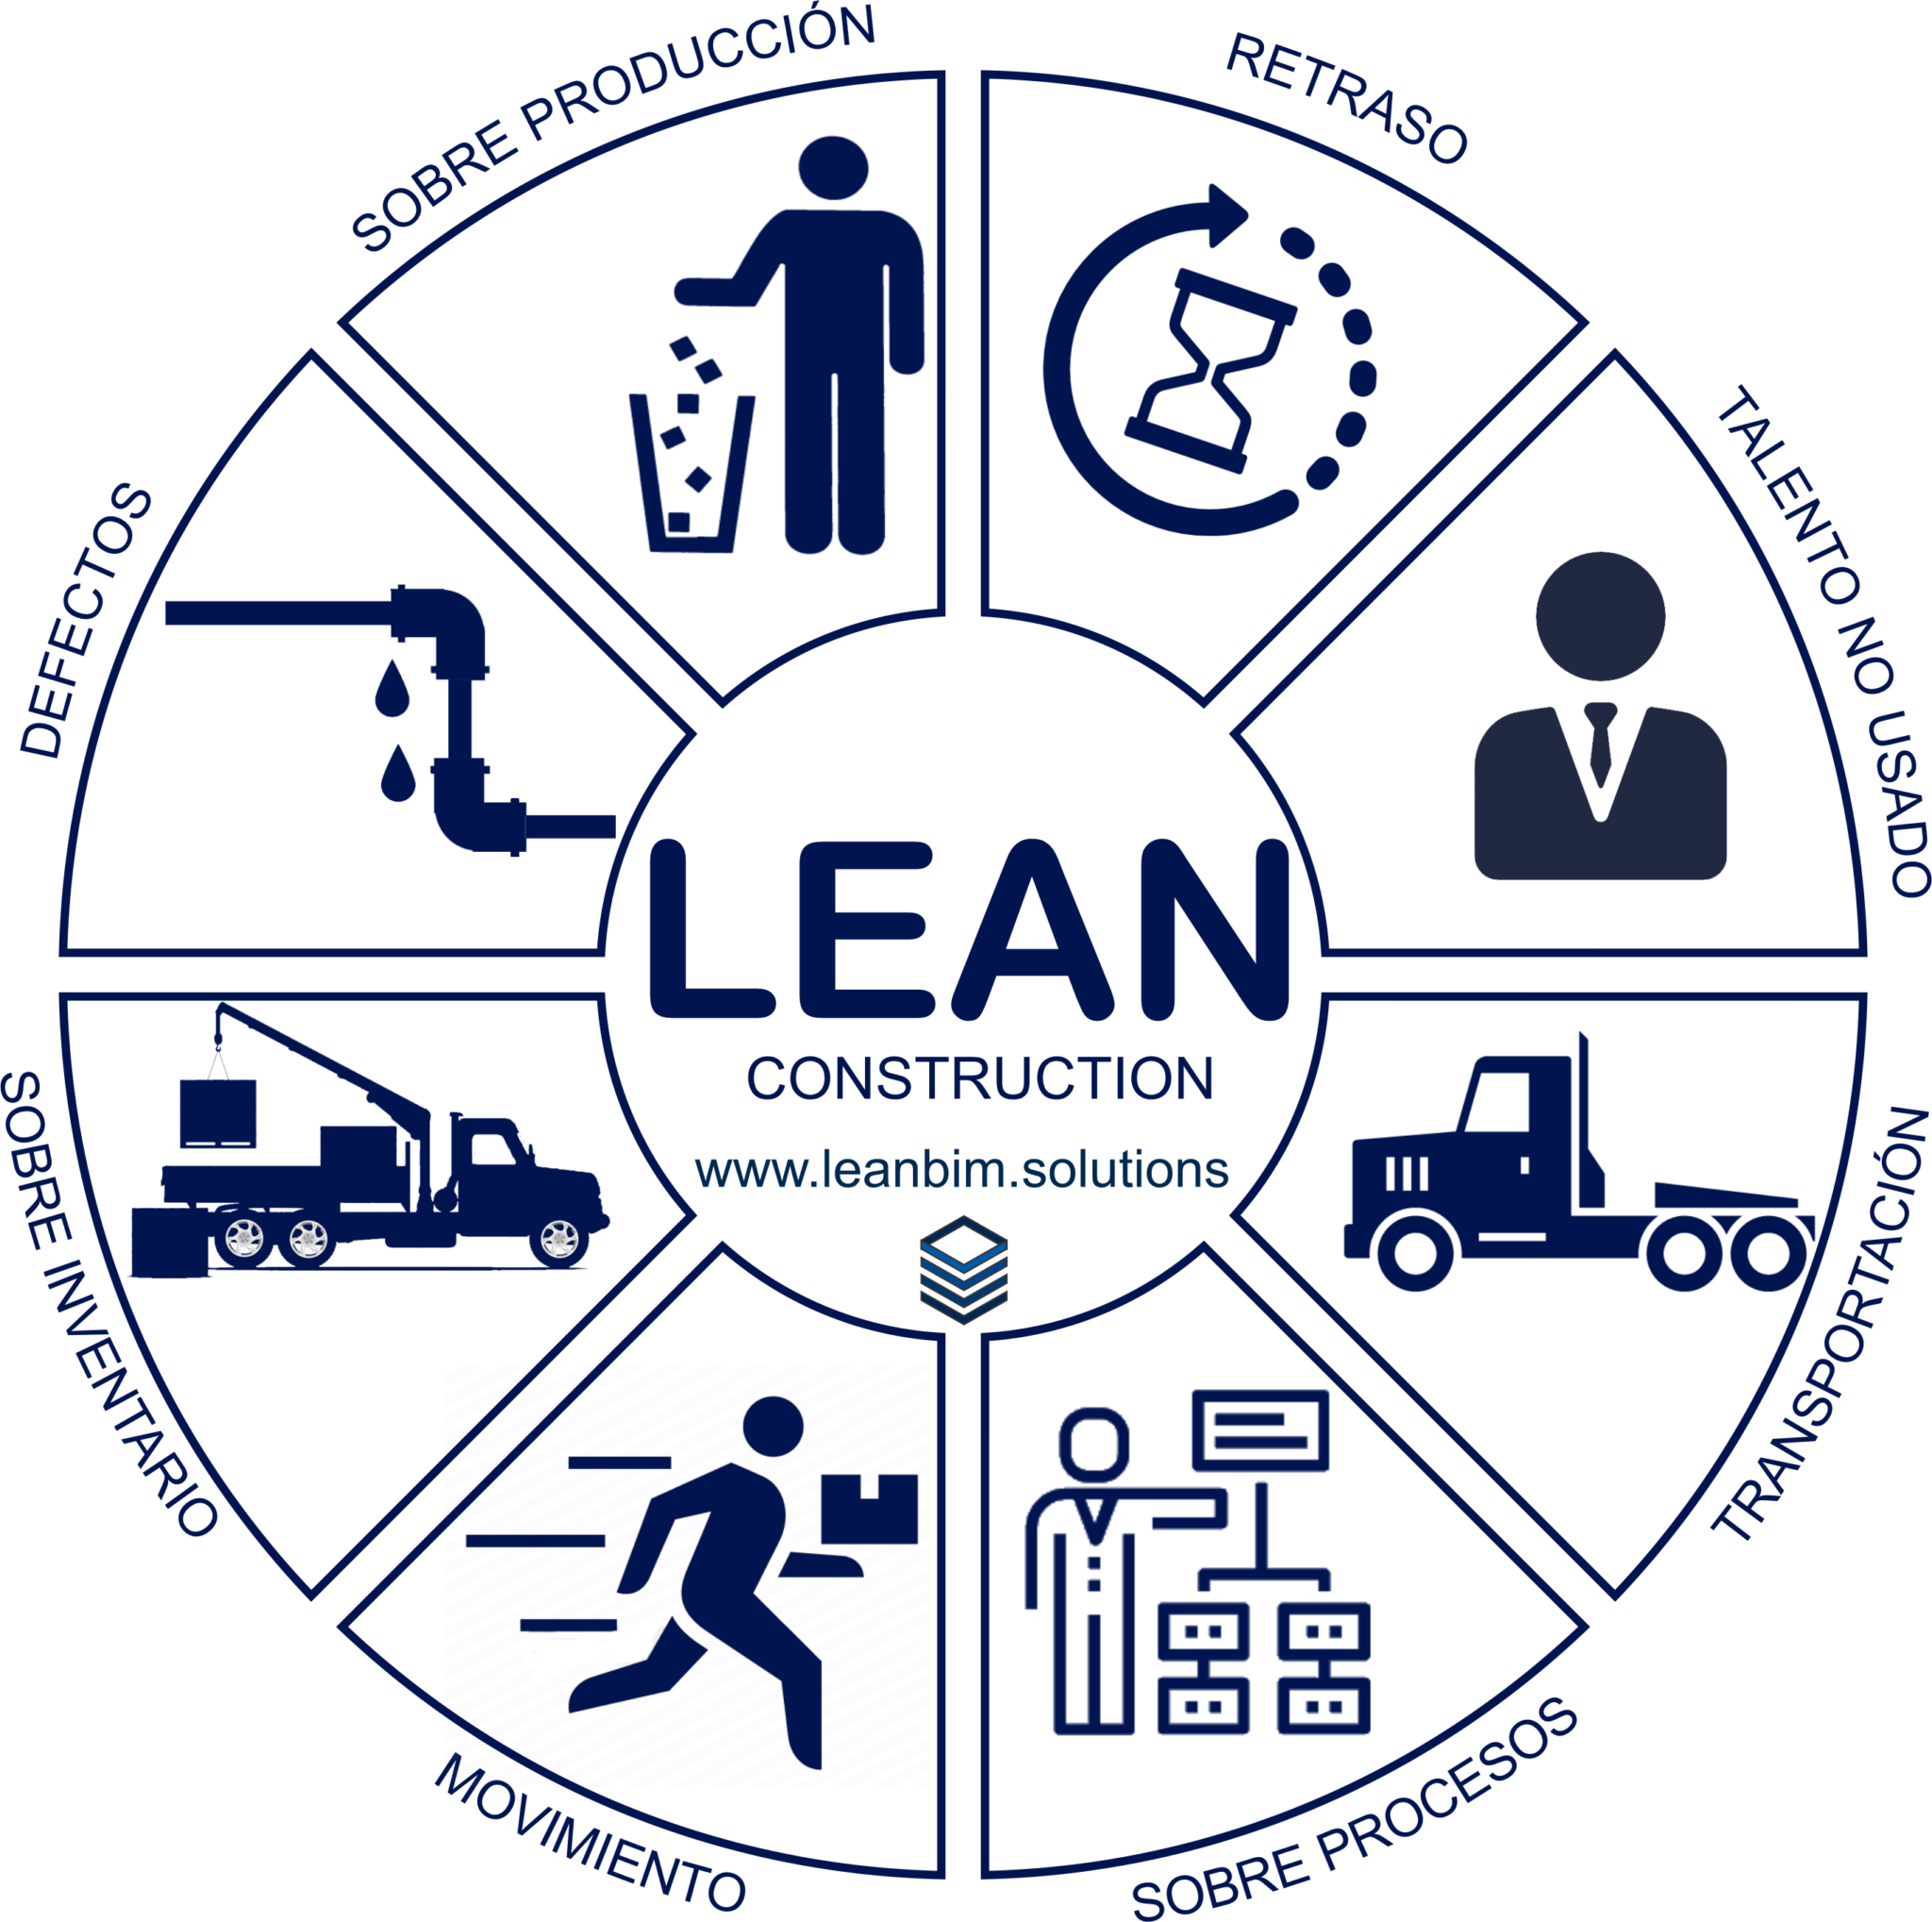 Lean Construction leanbim solutions constructora